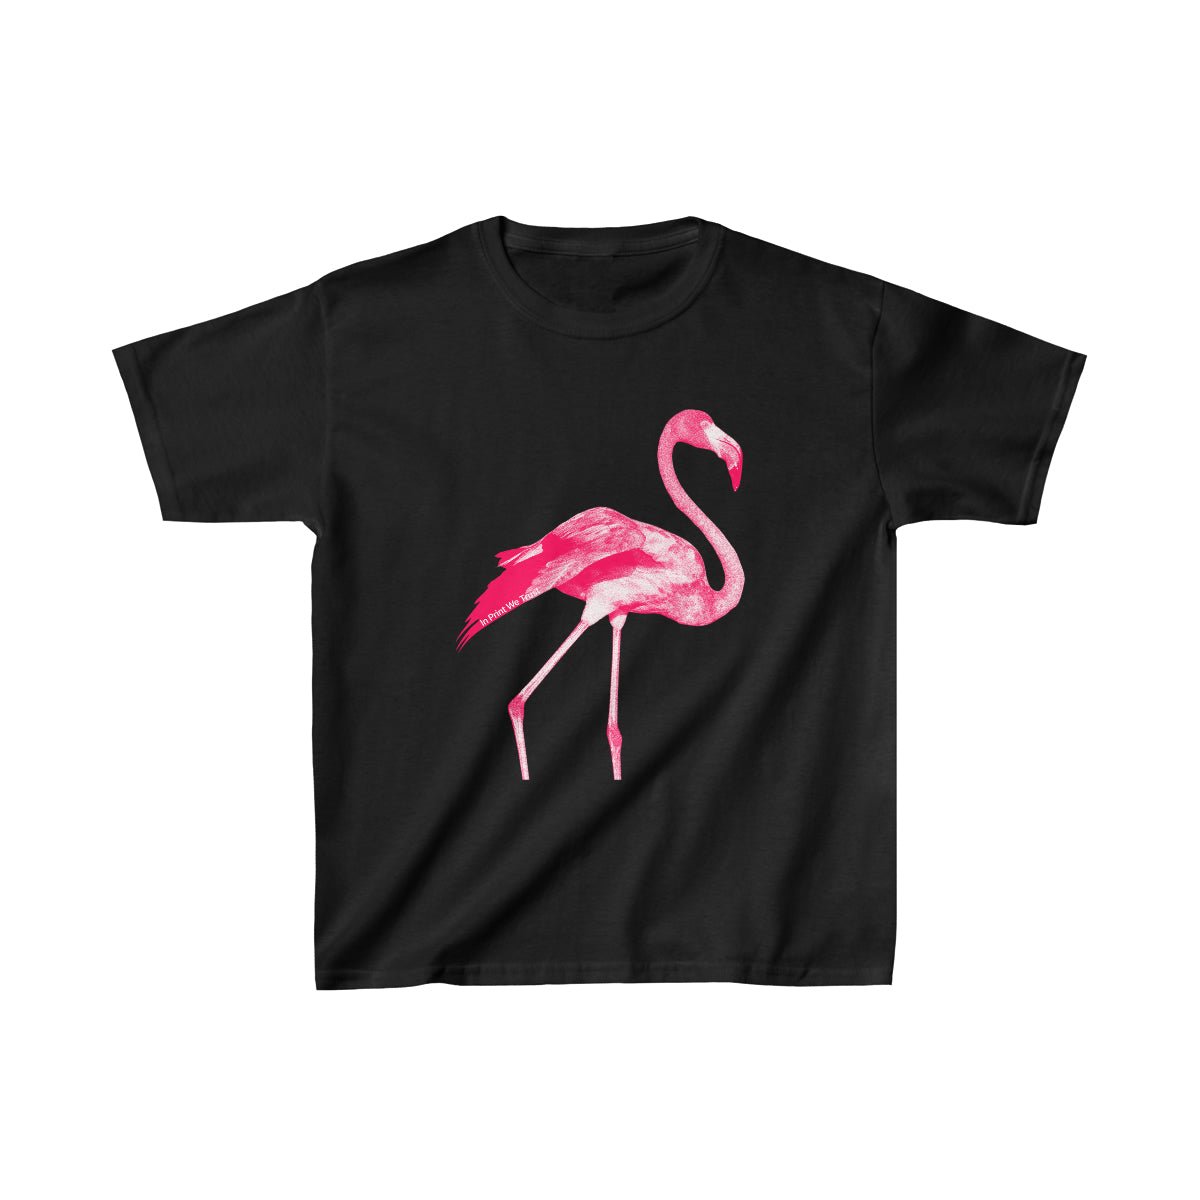 'Flamingo' baby tee - In Print We Trust